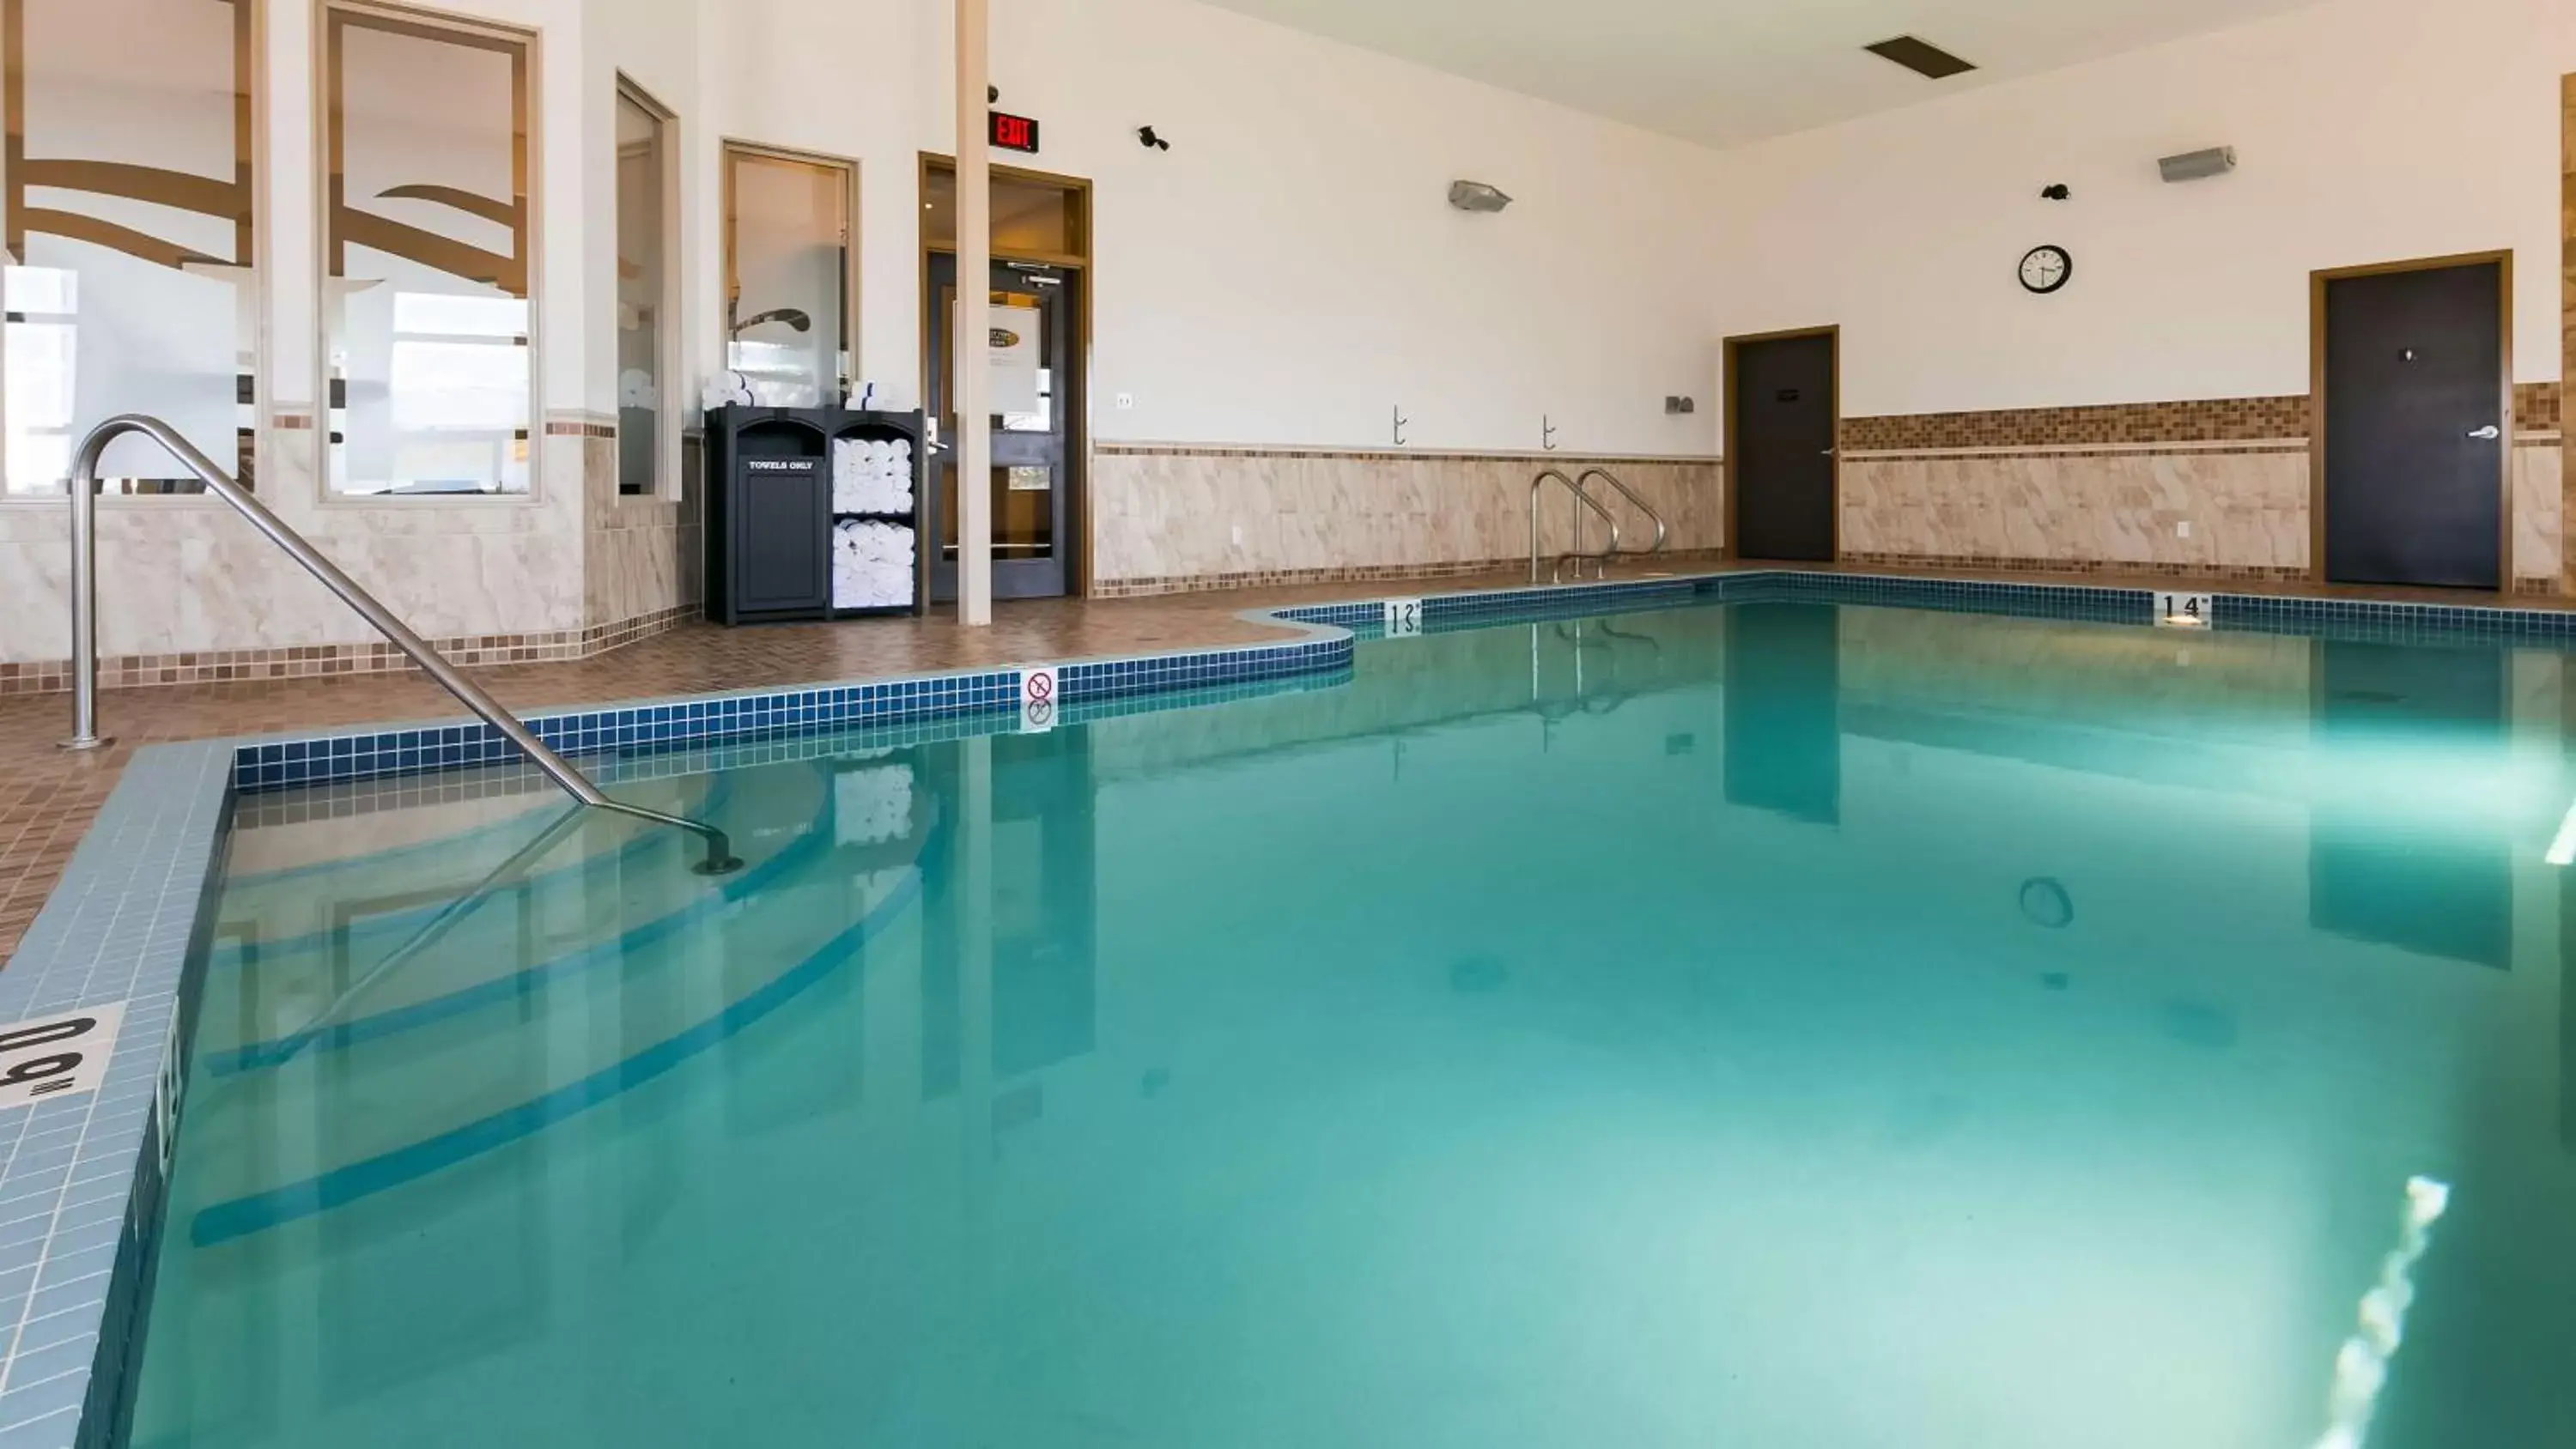 On site, Swimming Pool in Best Western Wainwright Inn & Suites